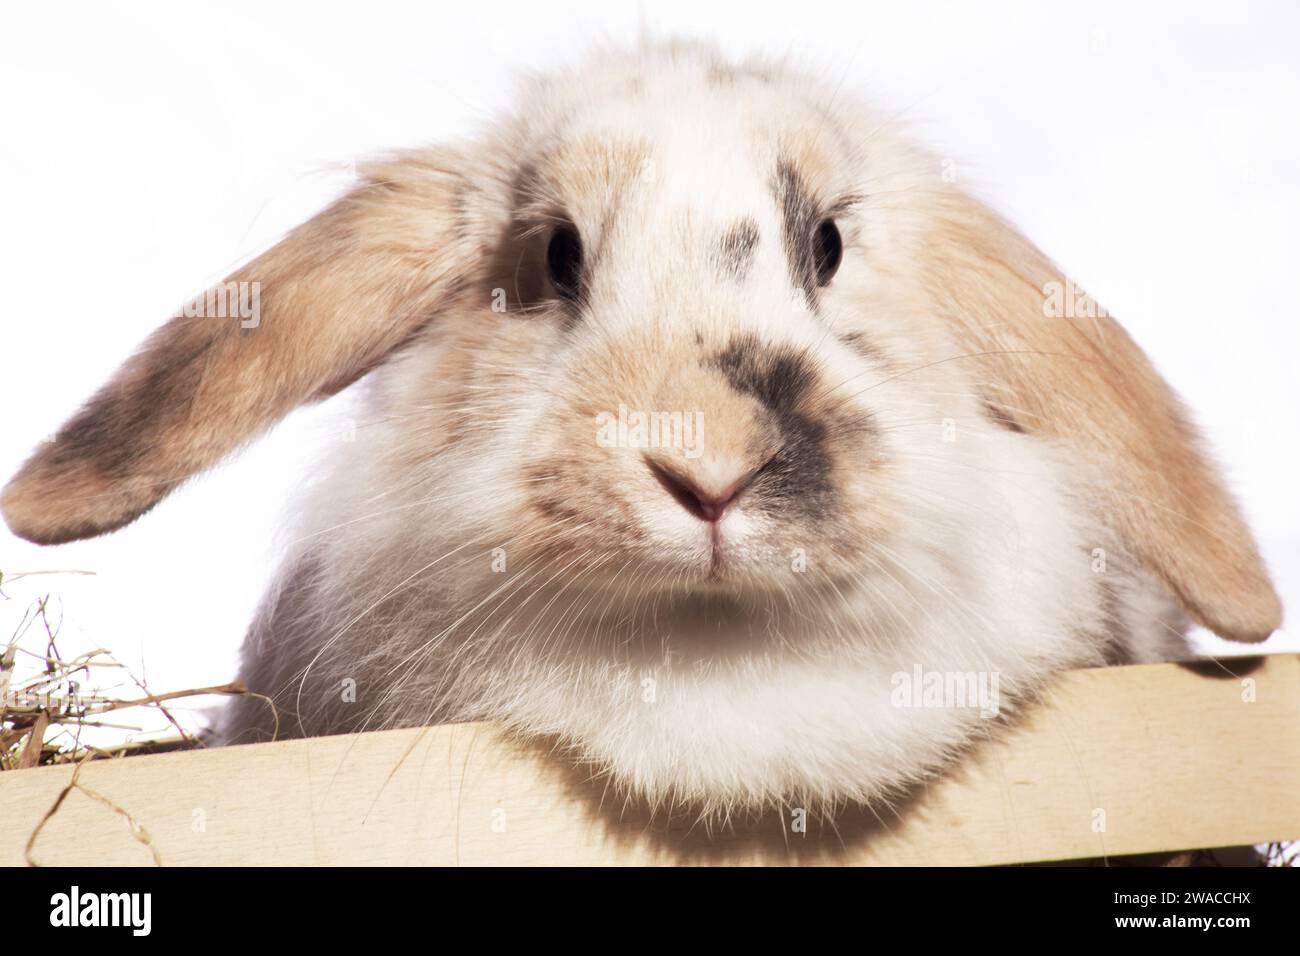 Un lapin moelleux à oreilles léchées, irrésistiblement mignon, fourre la tête dans un panier pique-nique. Sur fond sombre Banque D'Images